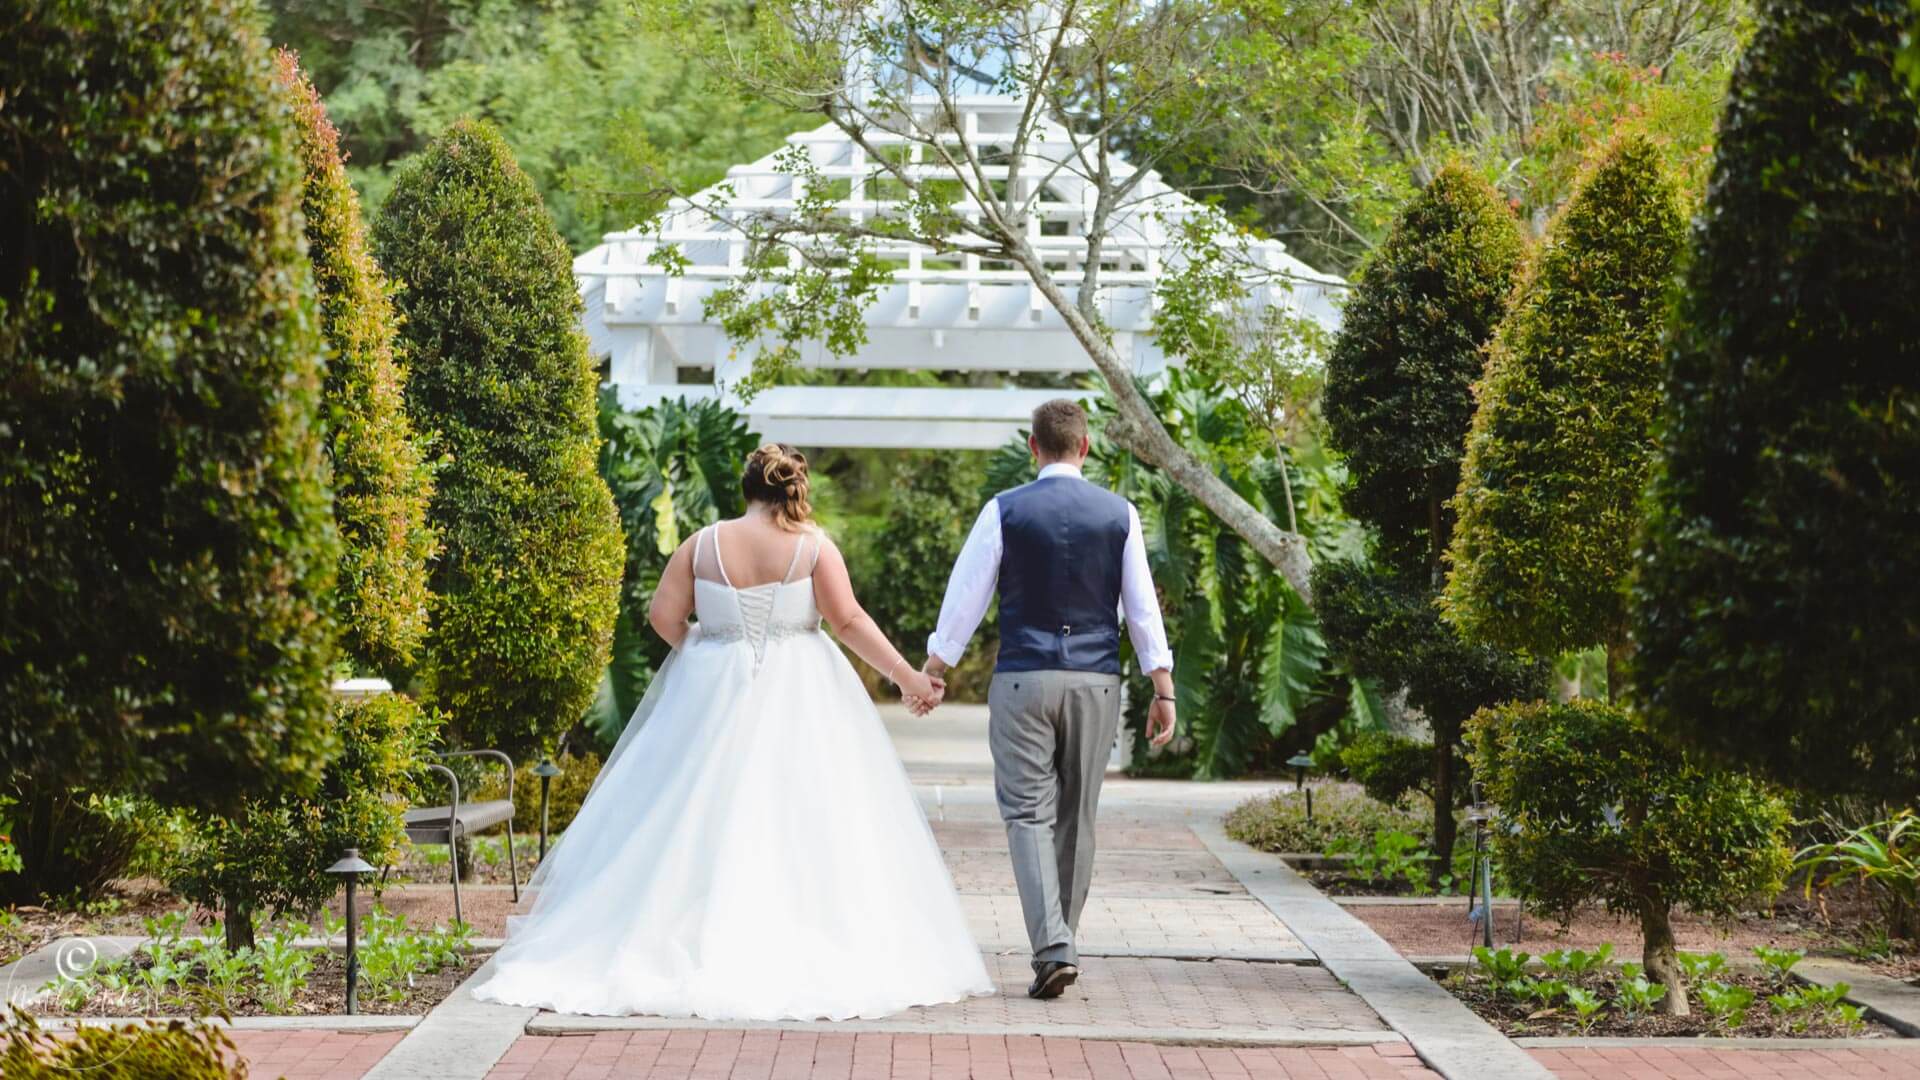 Florida garden wedding photo bride and groom walking in Leu Gardens Orlando